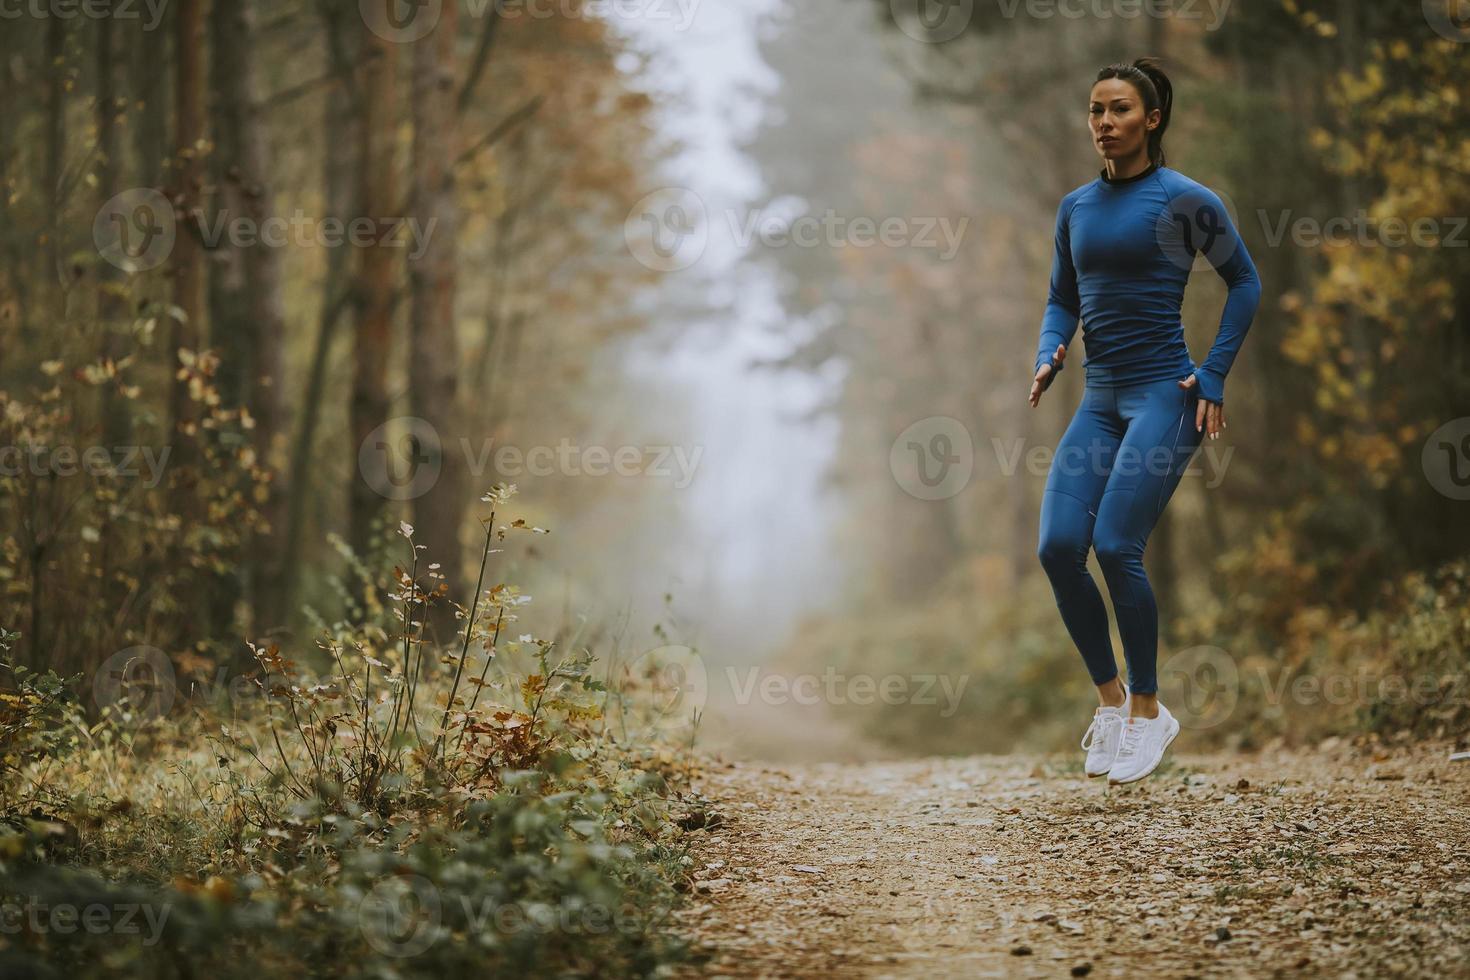 giovane donna che fa il salto in alto sul sentiero nel bosco in autunno foto